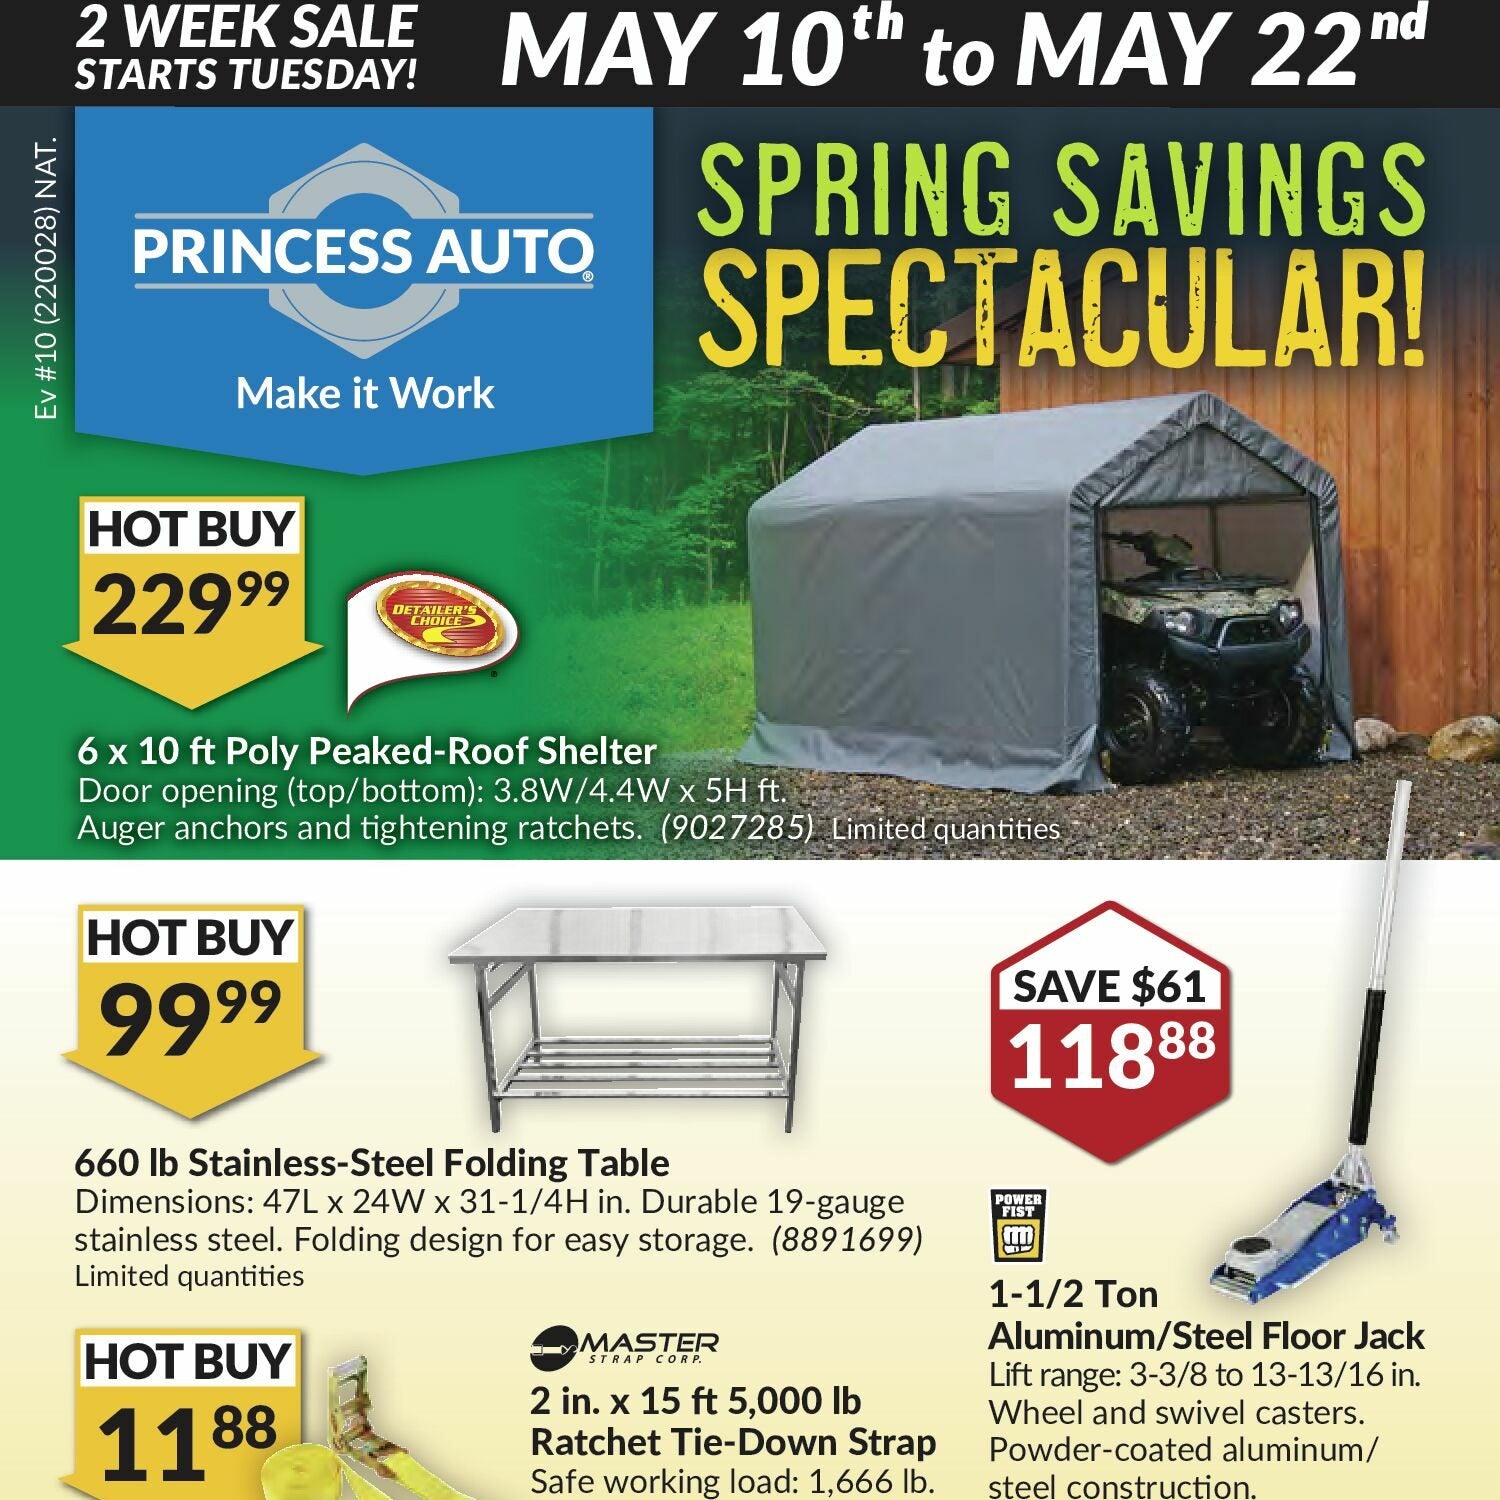 Princess Auto Weekly Flyer - 2 Week Sale - Spring Savings